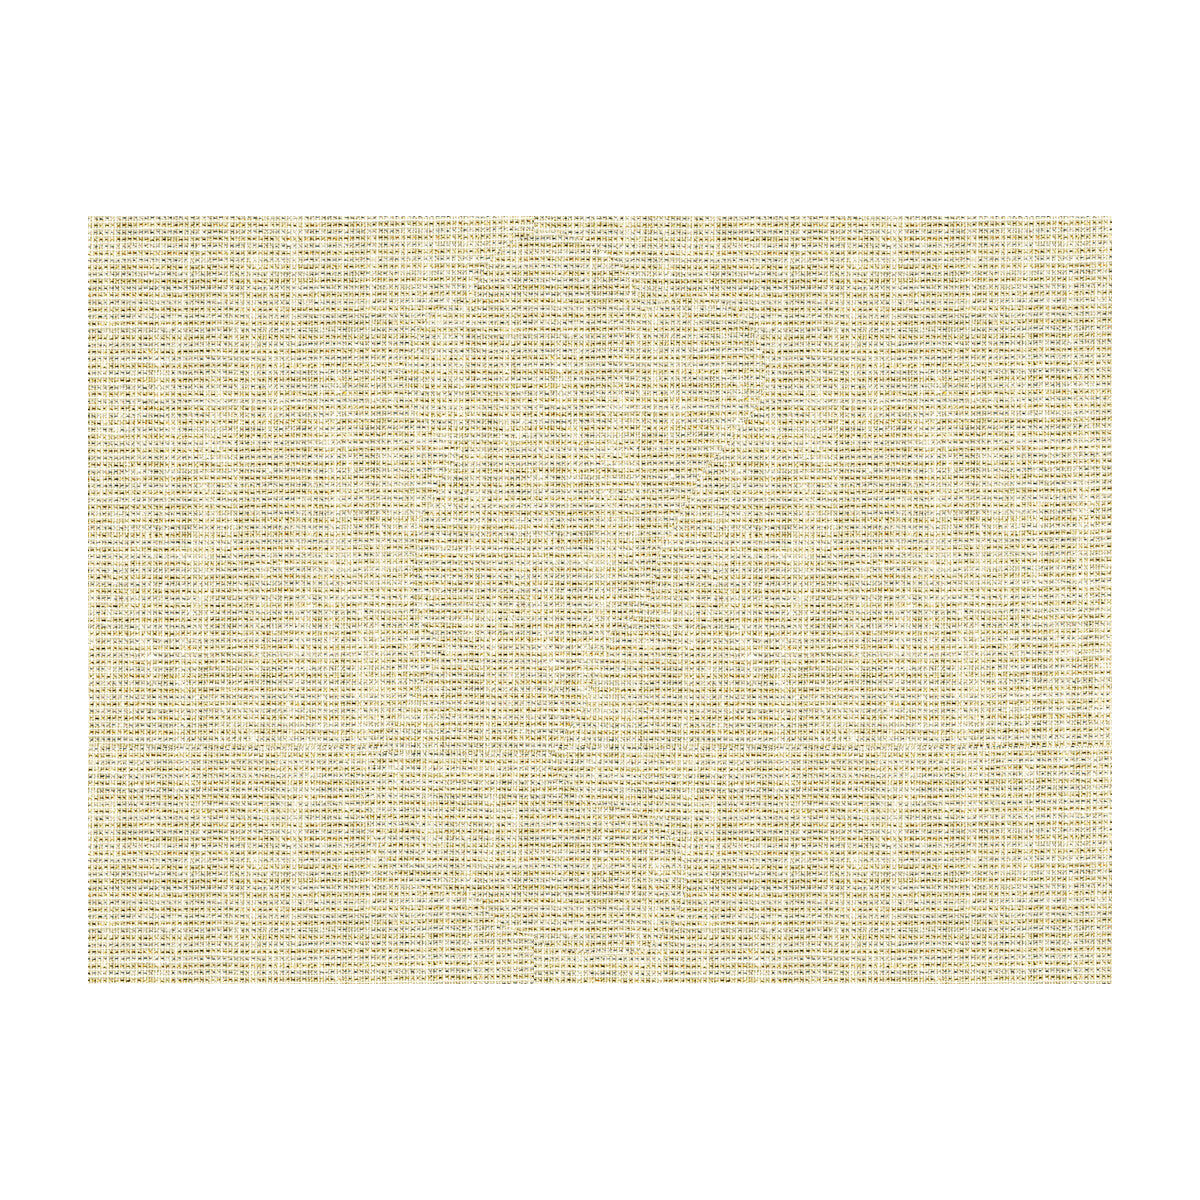 Kravet Basics fabric in 3922-411 color - pattern 3922.411.0 - by Kravet Basics